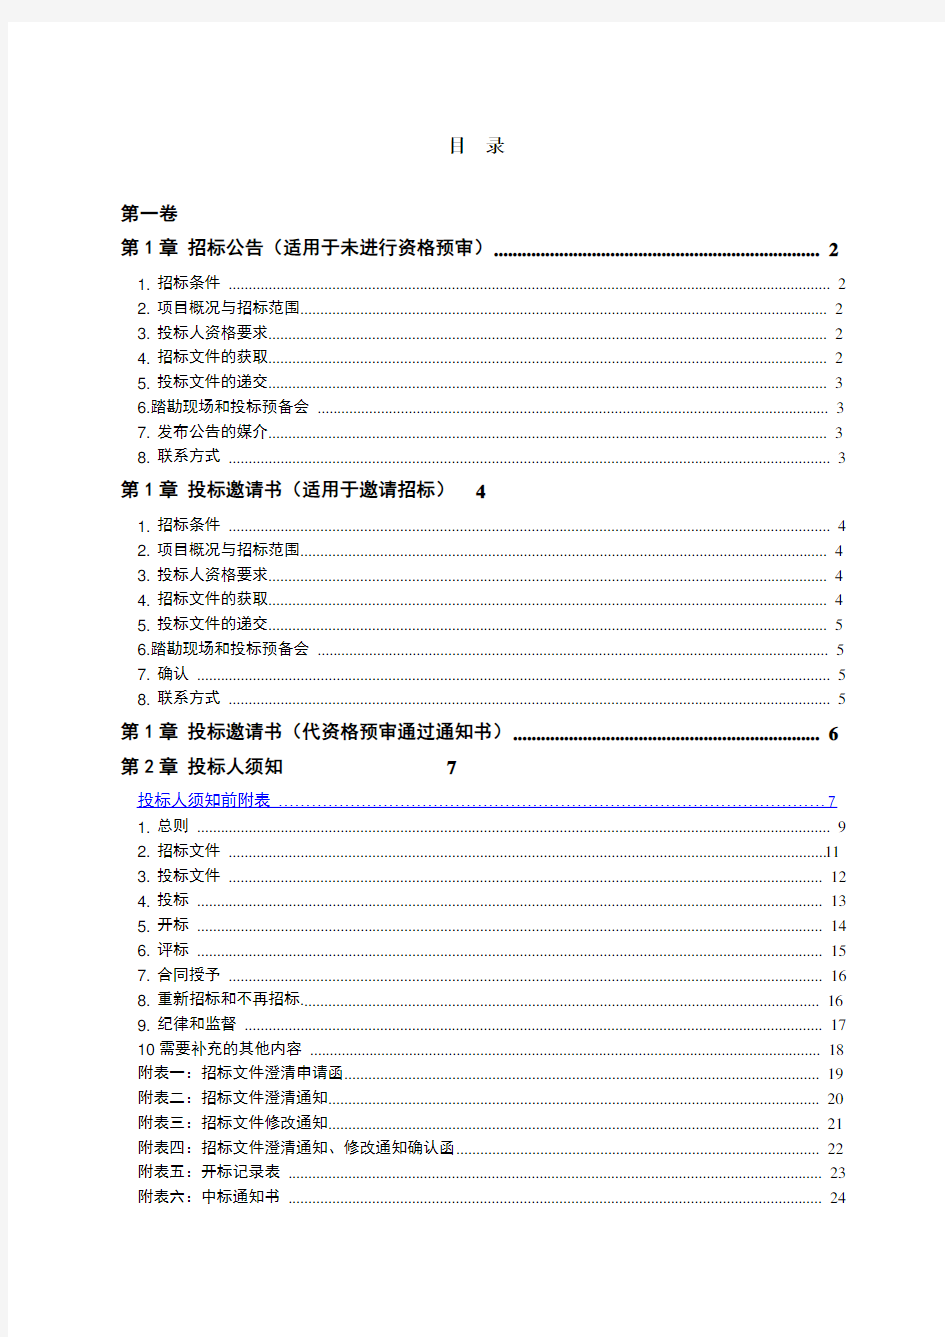 《水利水电工程标准施工招标文件》(2009年版)